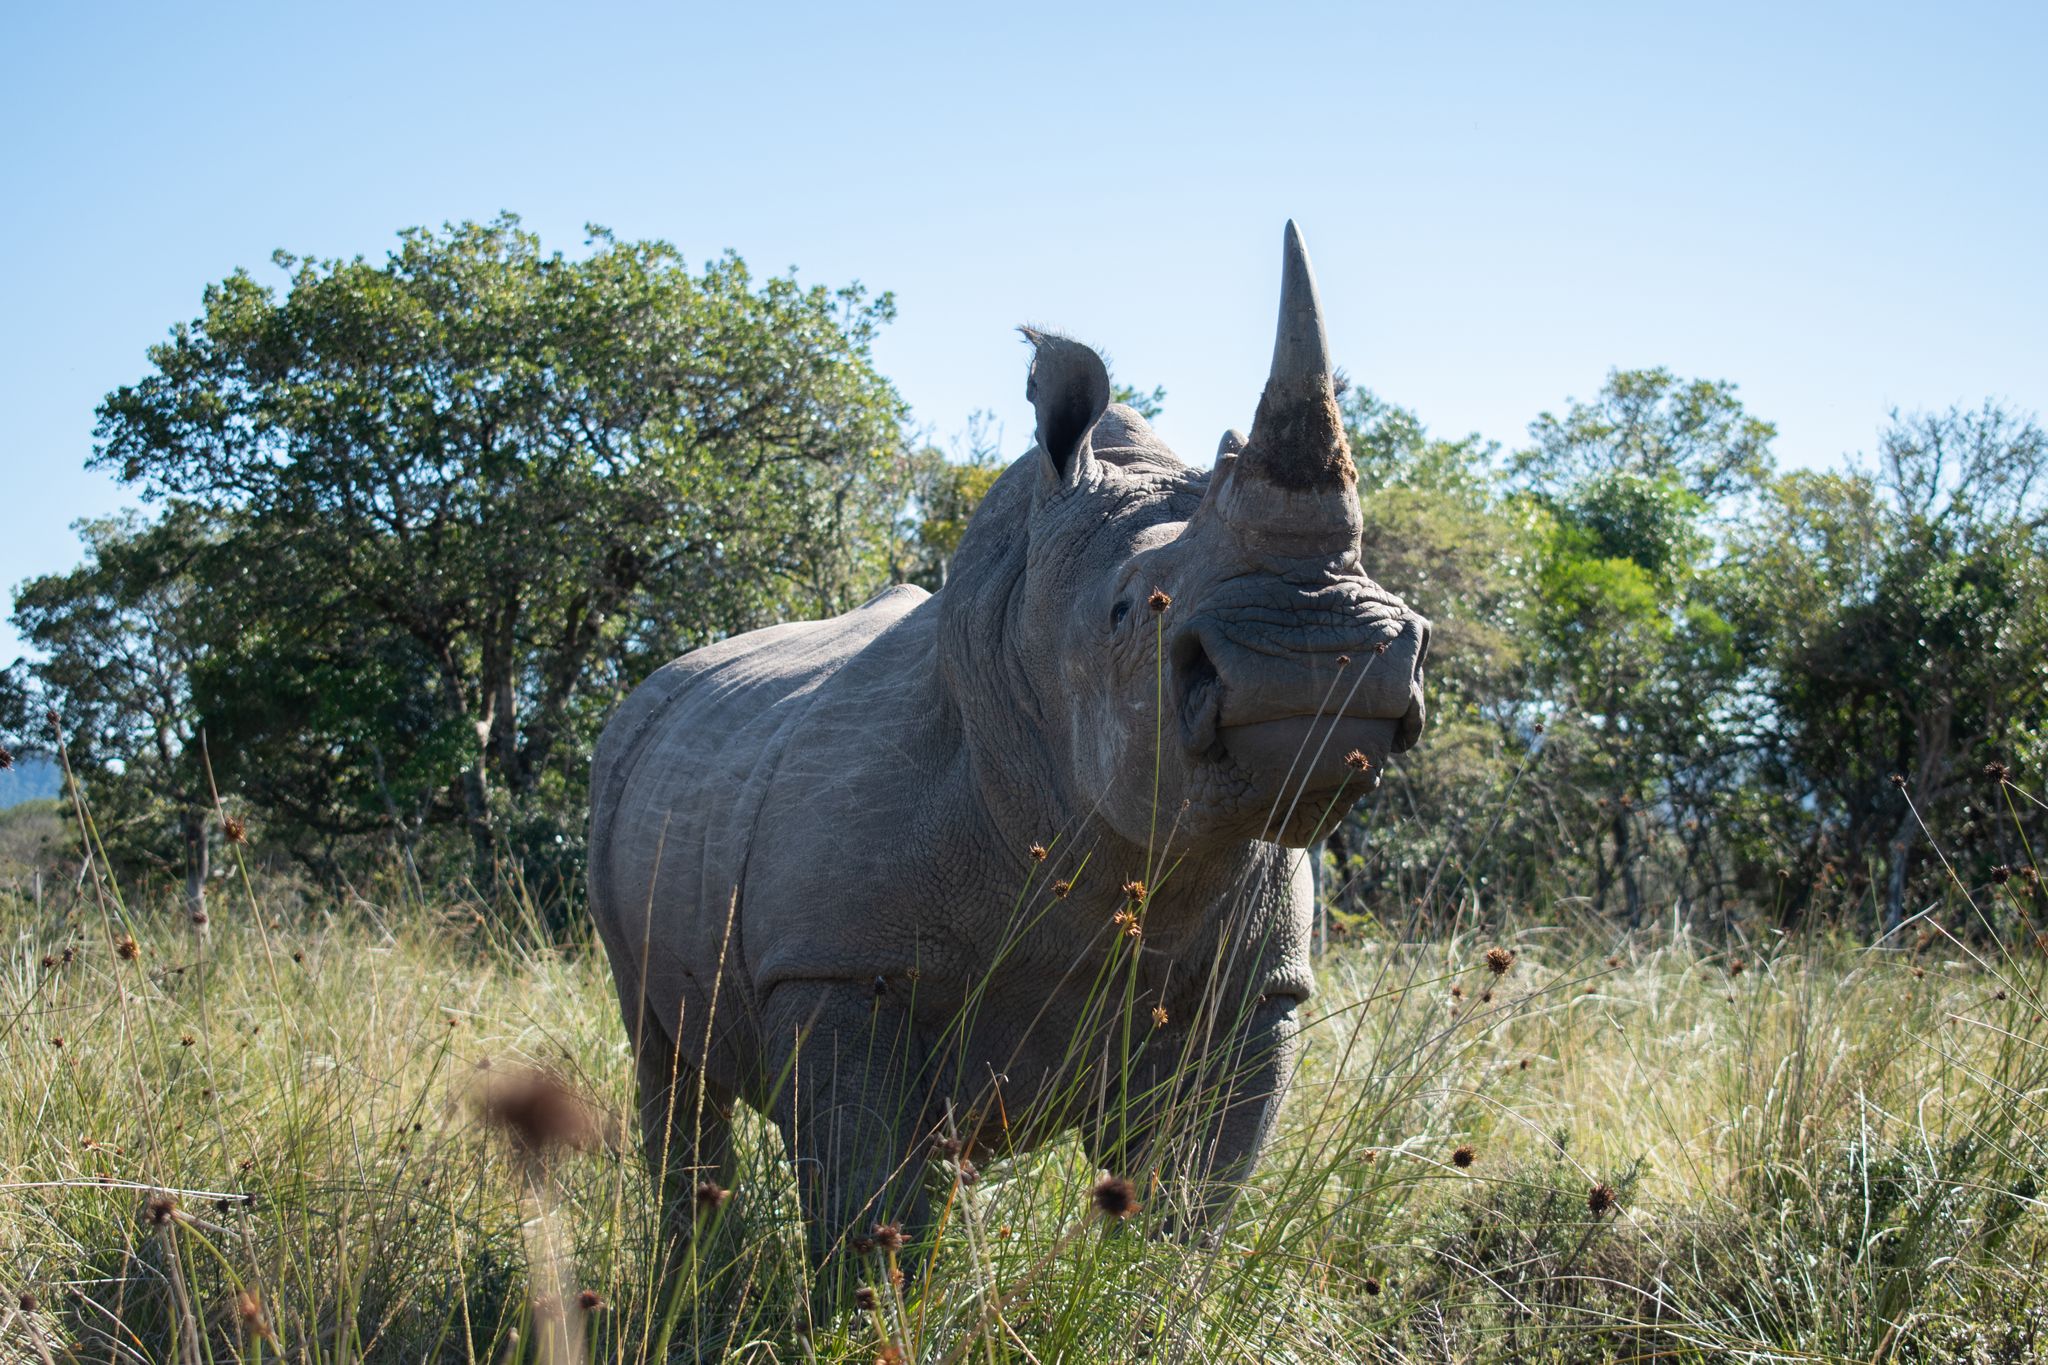 HANDOUT - El rinoceronte "Igor", en la Reserva Buffalo Kloof Game, antes de ser tratado por protectores de animales de Sudáfrica para protegerlo contra la caza furtiva. Foto: Jessica Shuttleworth/University of the Witwatersrand/dpa - ATENCIÓN: Sólo para uso editorial y mencionando el crédito completo